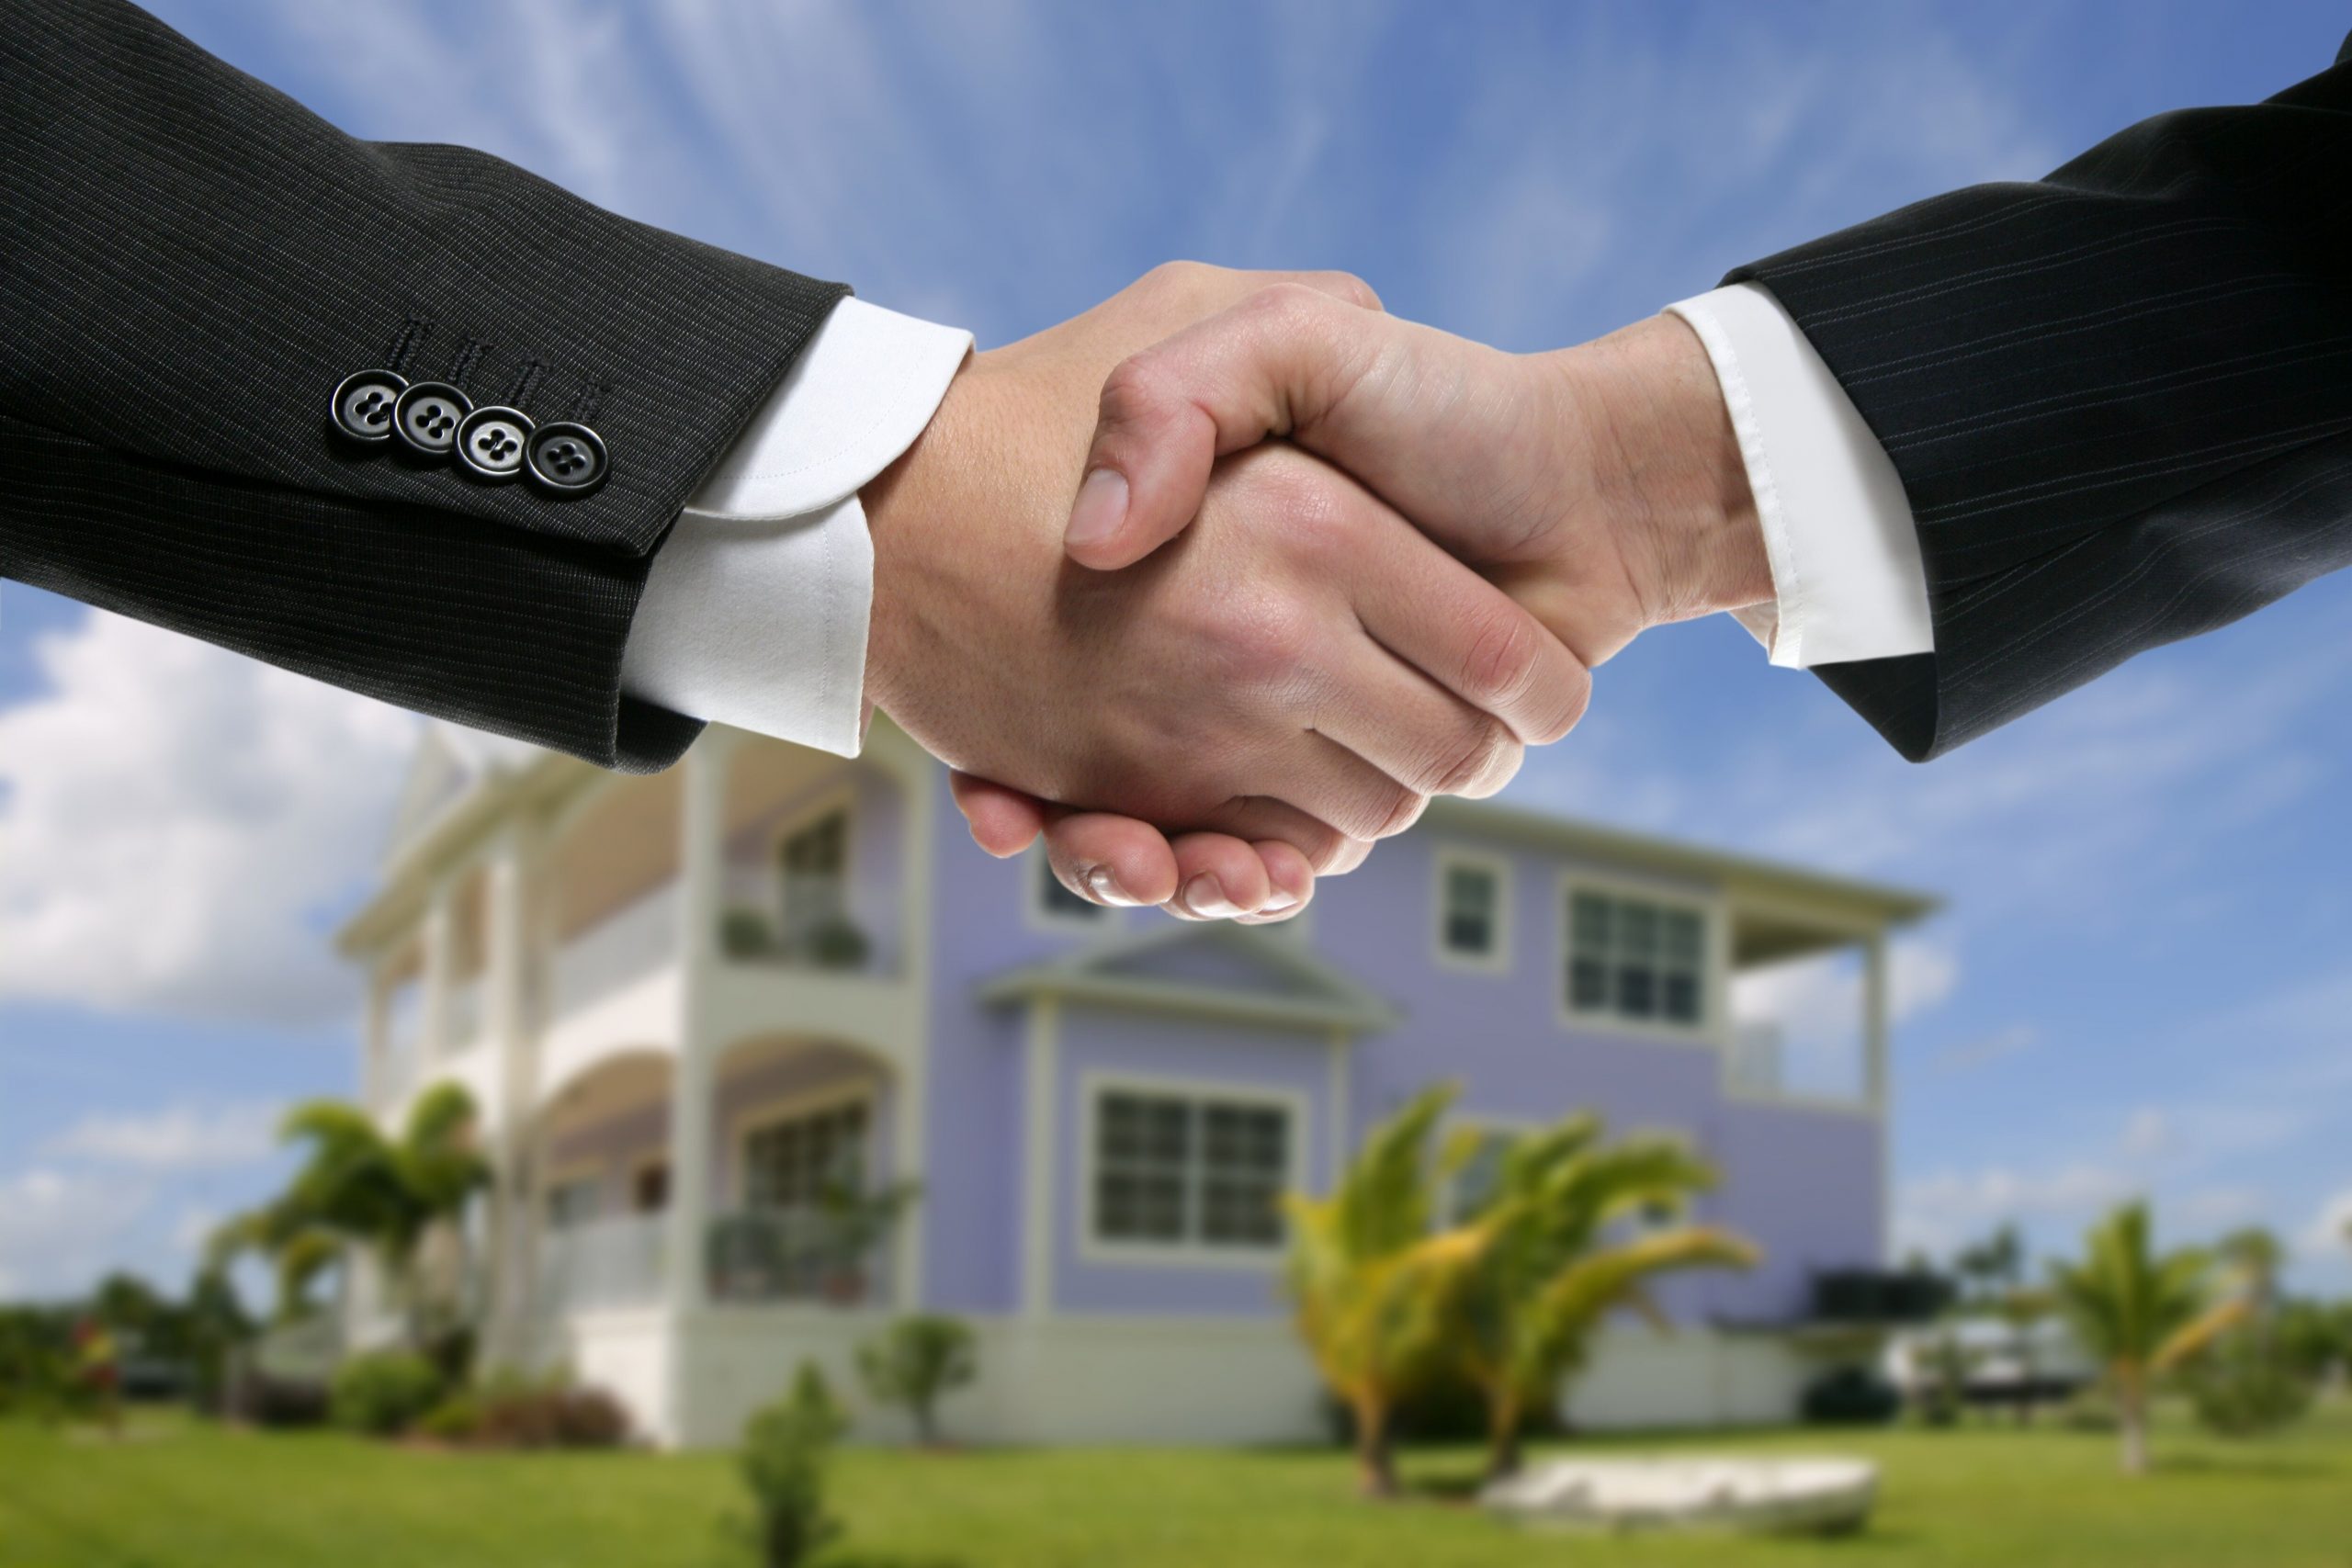 Процесс регистрации права собственности на недвижимость - основные моменты и порядок действий